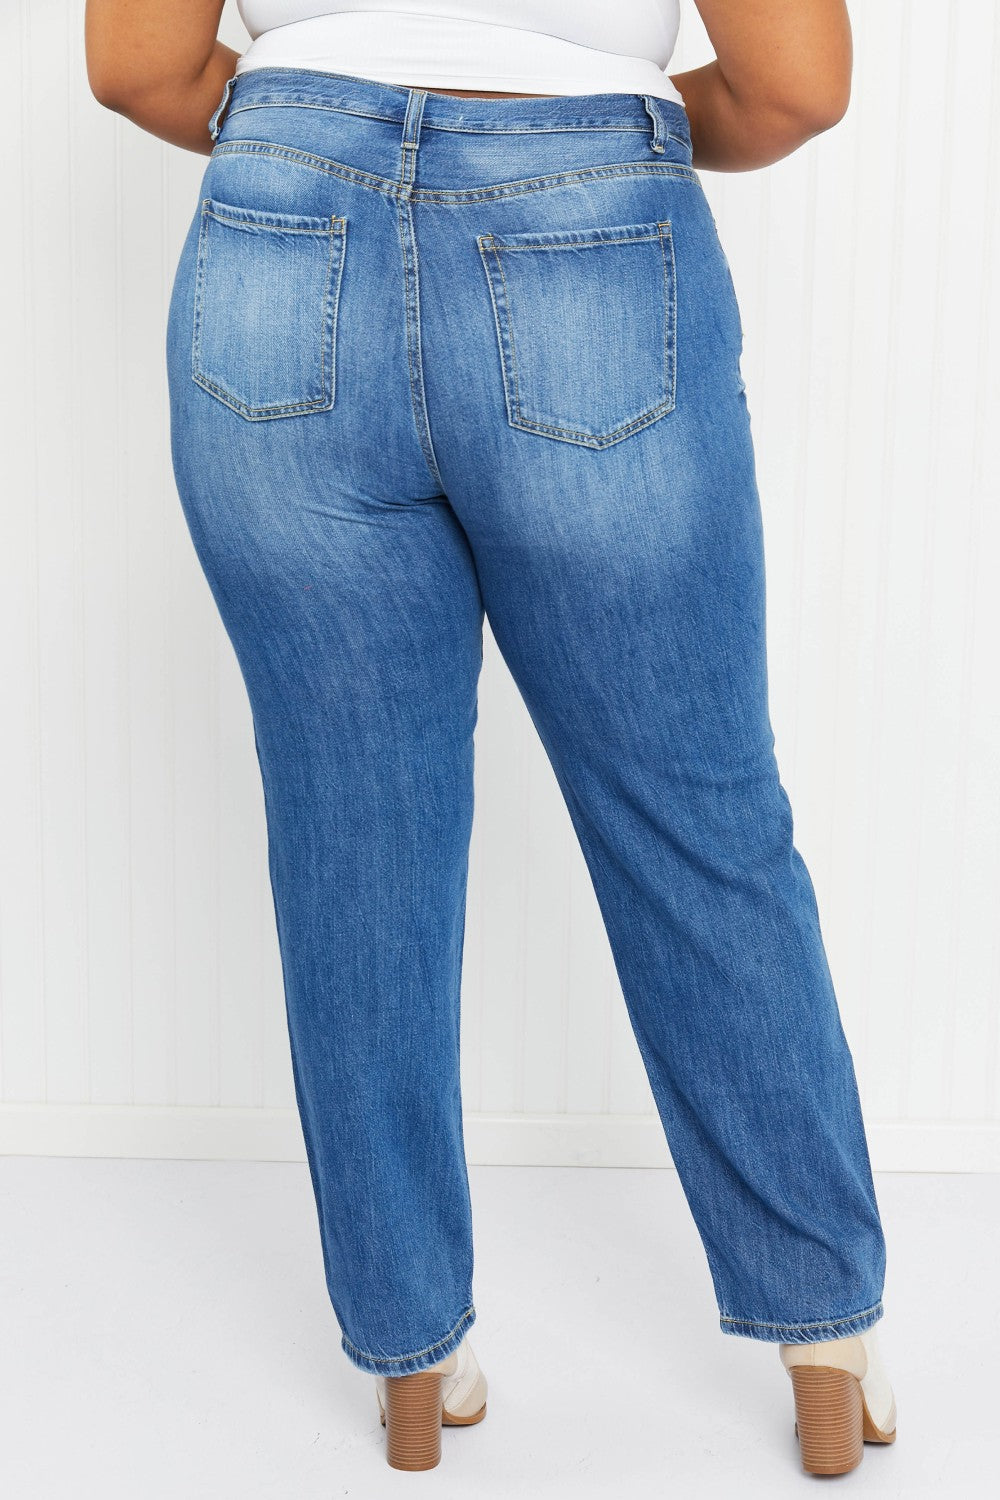 Zenana Brie Full Size Mom Jeans